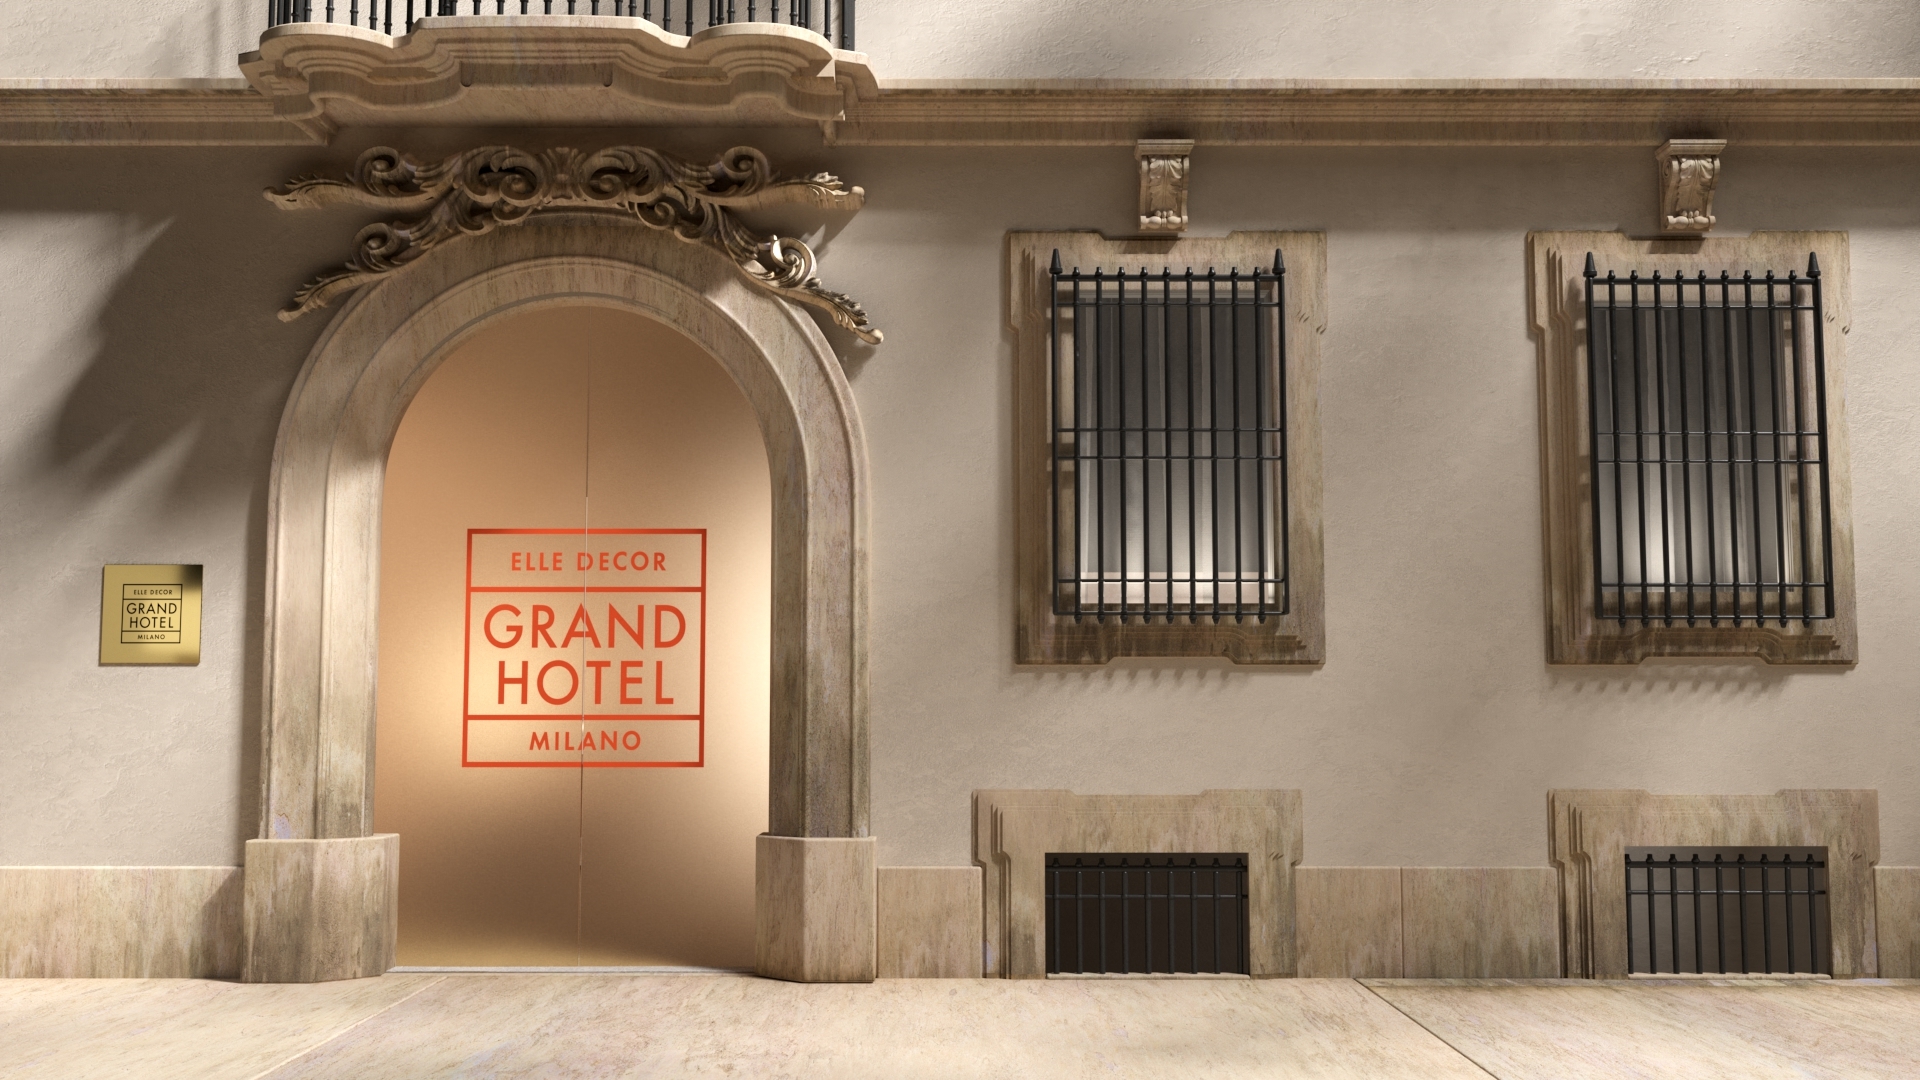 Iperhotel: La quinta edizione di Elle Decor Grand Hotel è tutta digitale